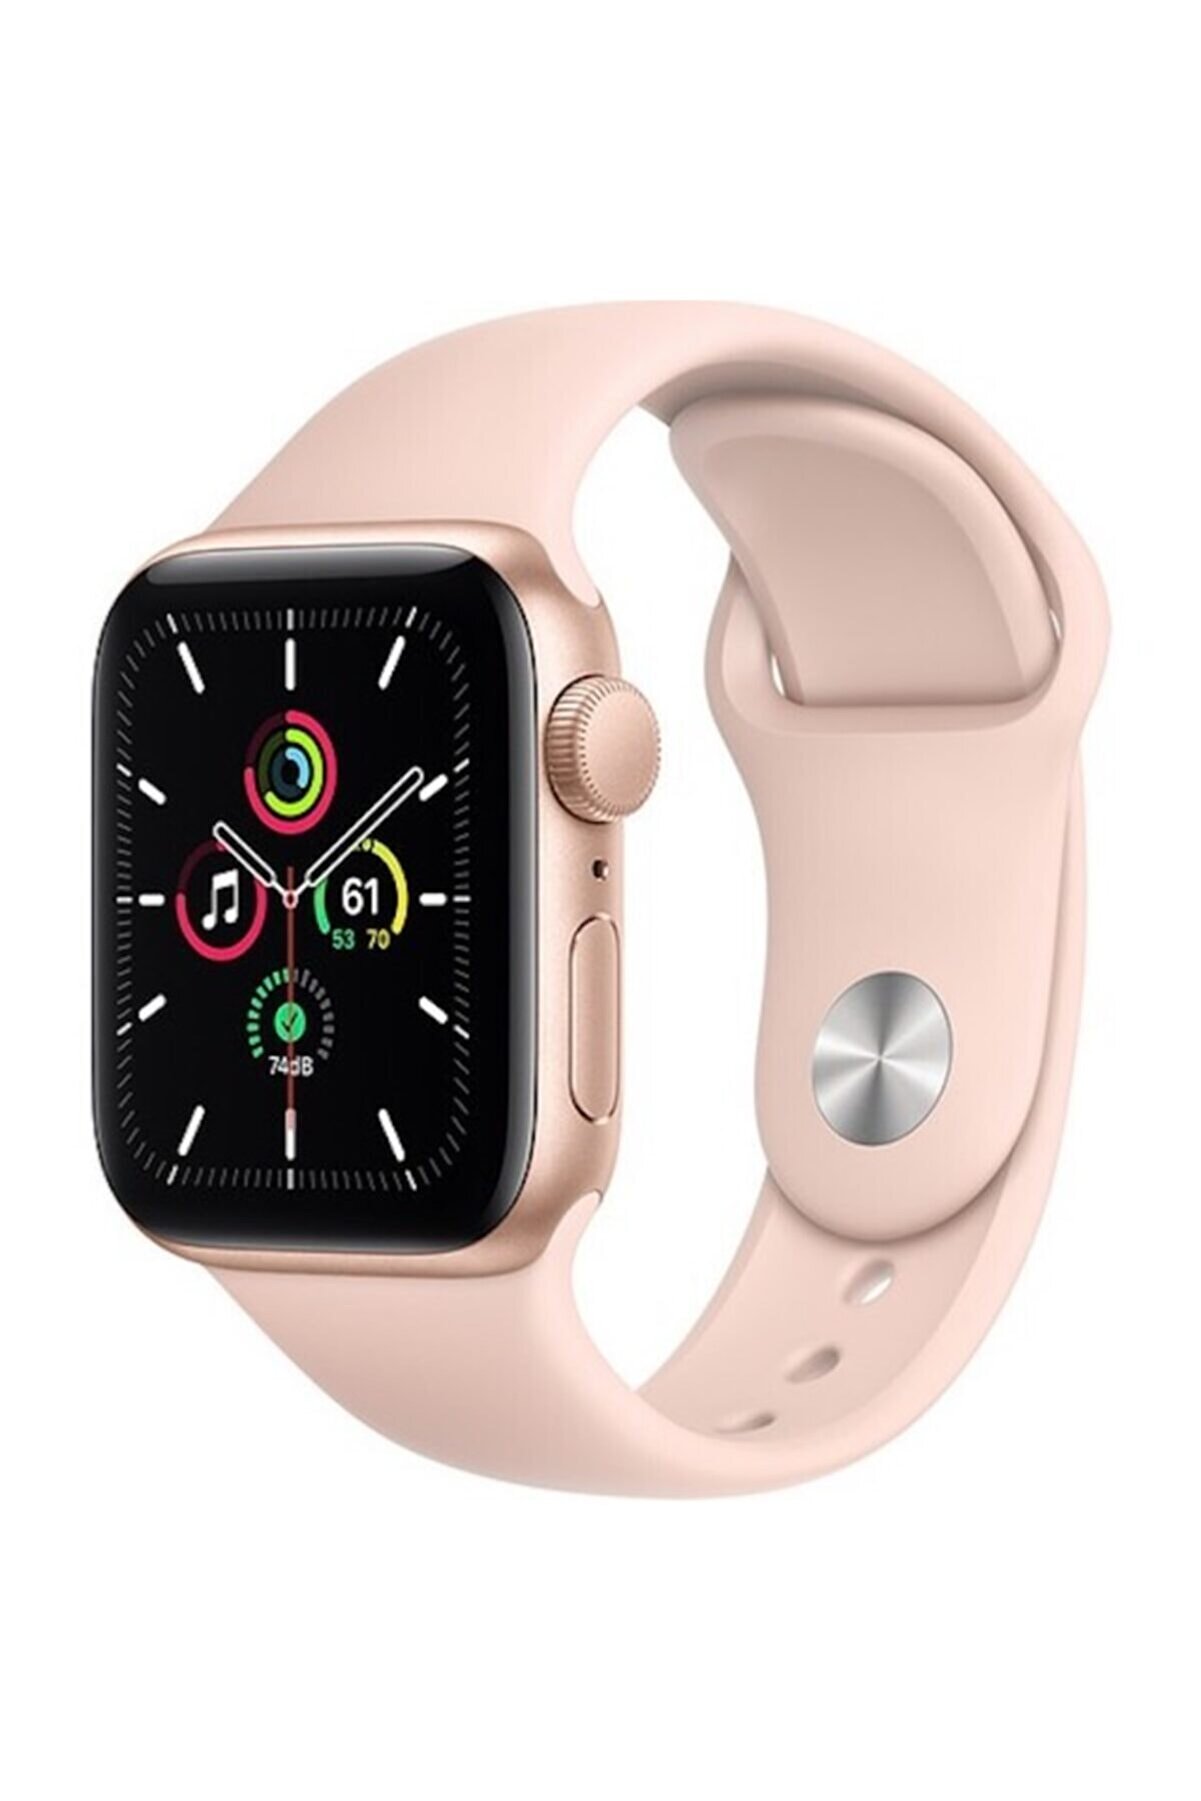 Apple Watch Se Gps 40 Mm Altın Rengi Alüminyum Kasa Ve Kum Pembesi Spor Kordon